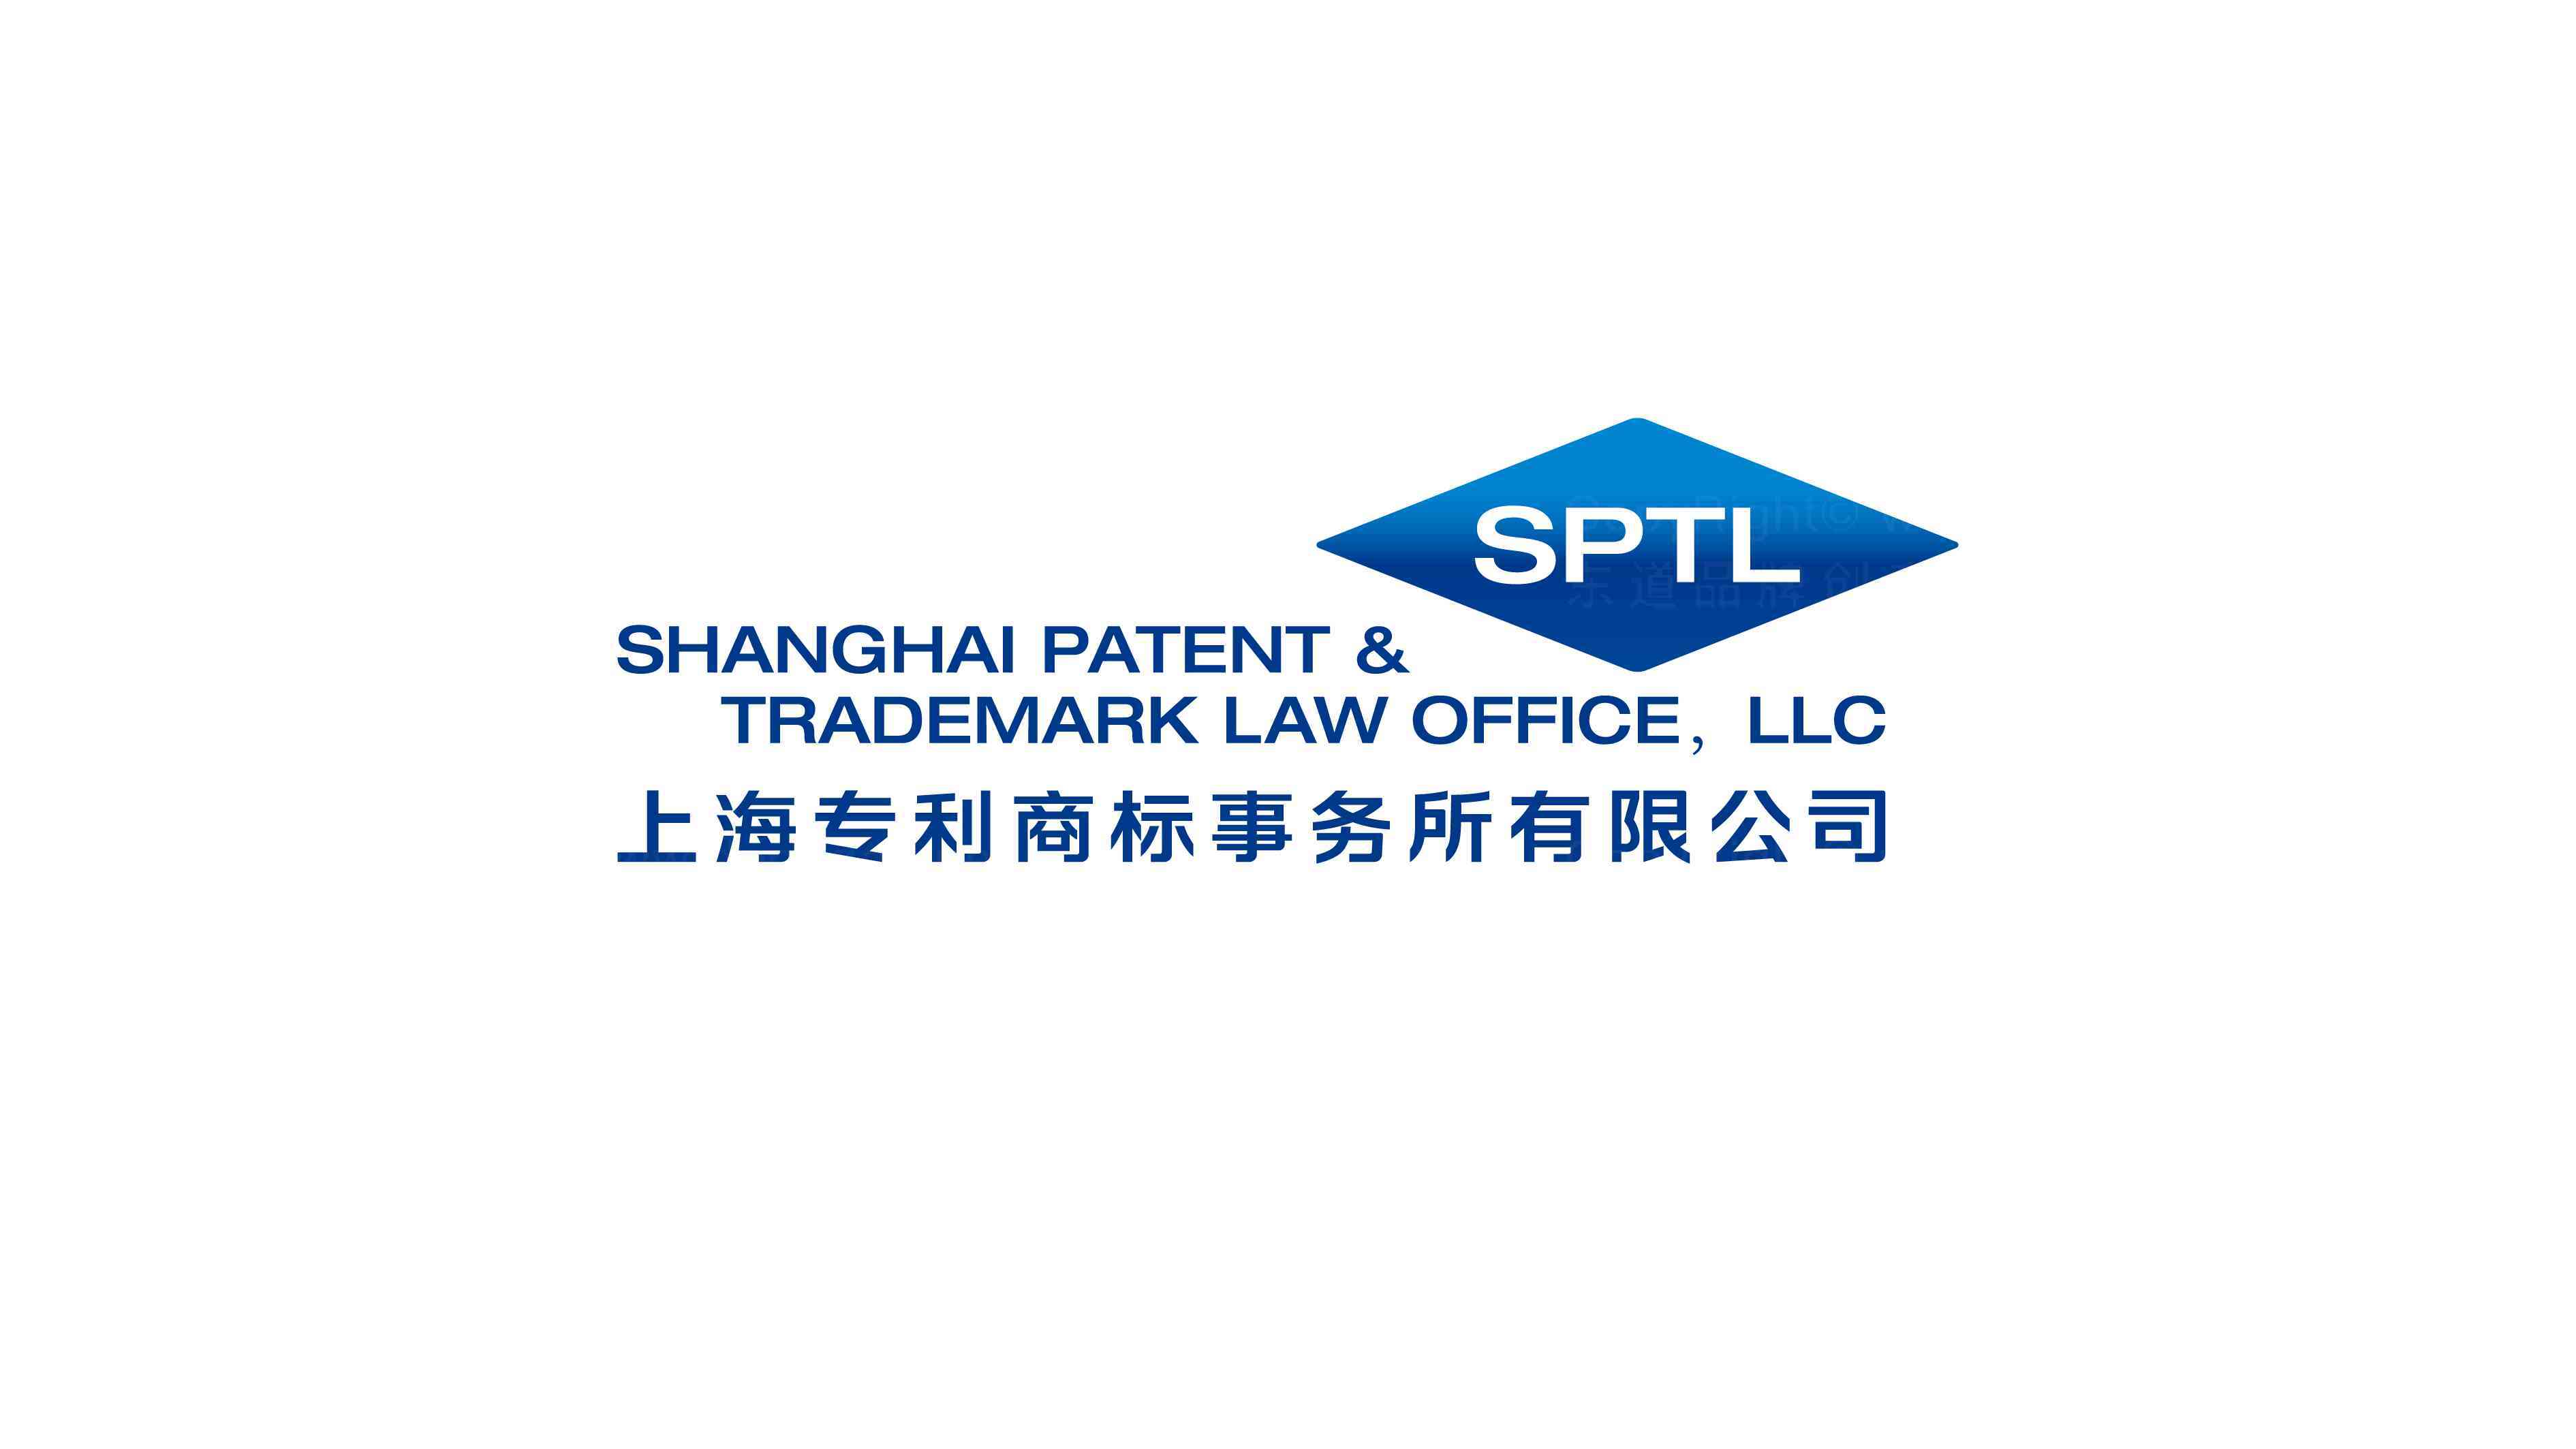 上海专利商标事务所有限公司商标事务所标志设计图片素材